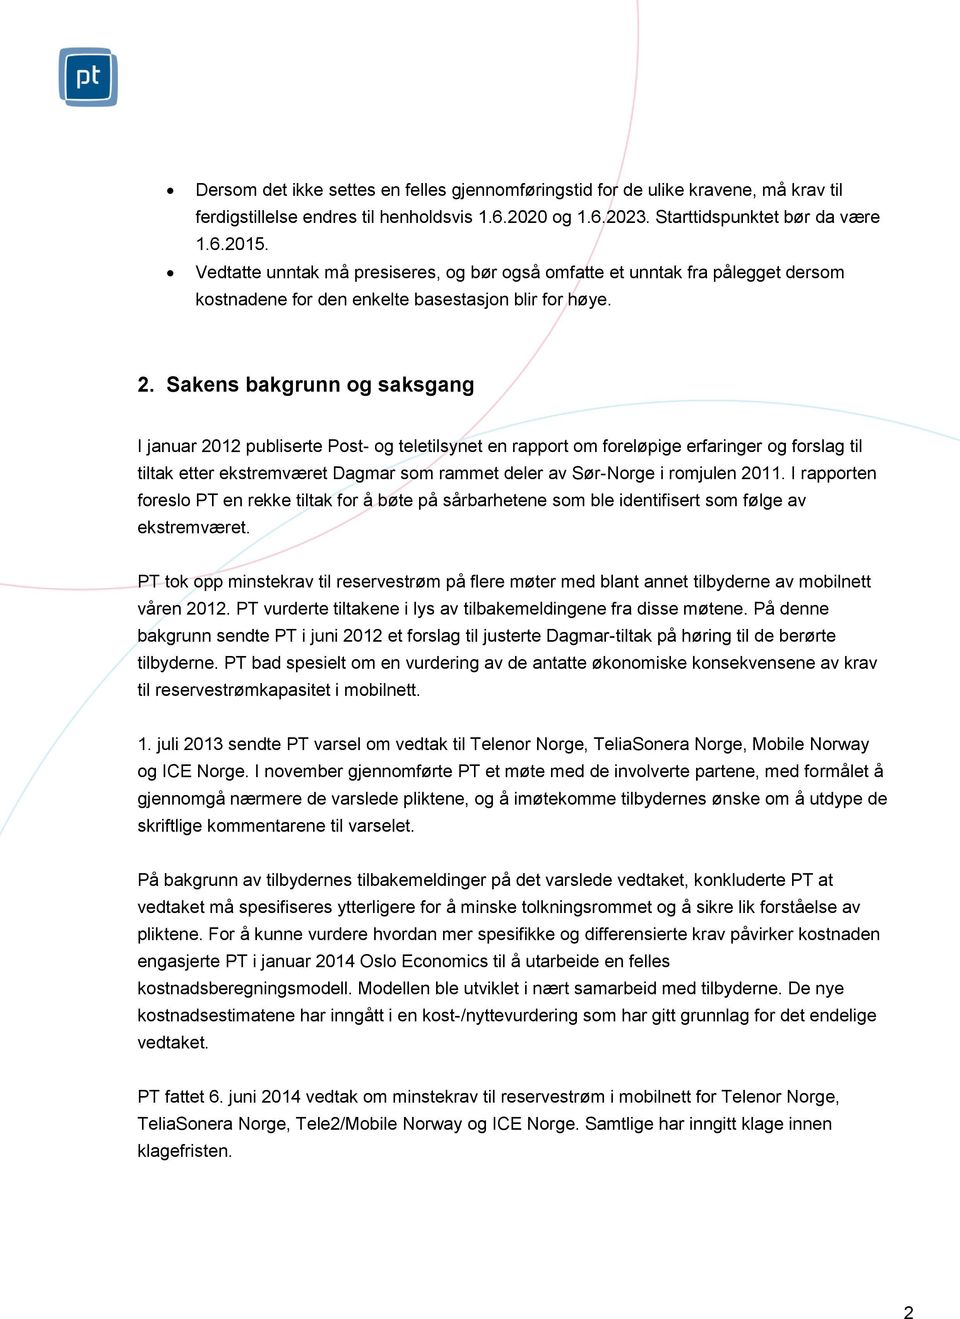 Sakens bakgrunn og saksgang I januar 2012 publiserte Post- og teletilsynet en rapport om foreløpige erfaringer og forslag til tiltak etter ekstremværet Dagmar som rammet deler av Sør-Norge i romjulen